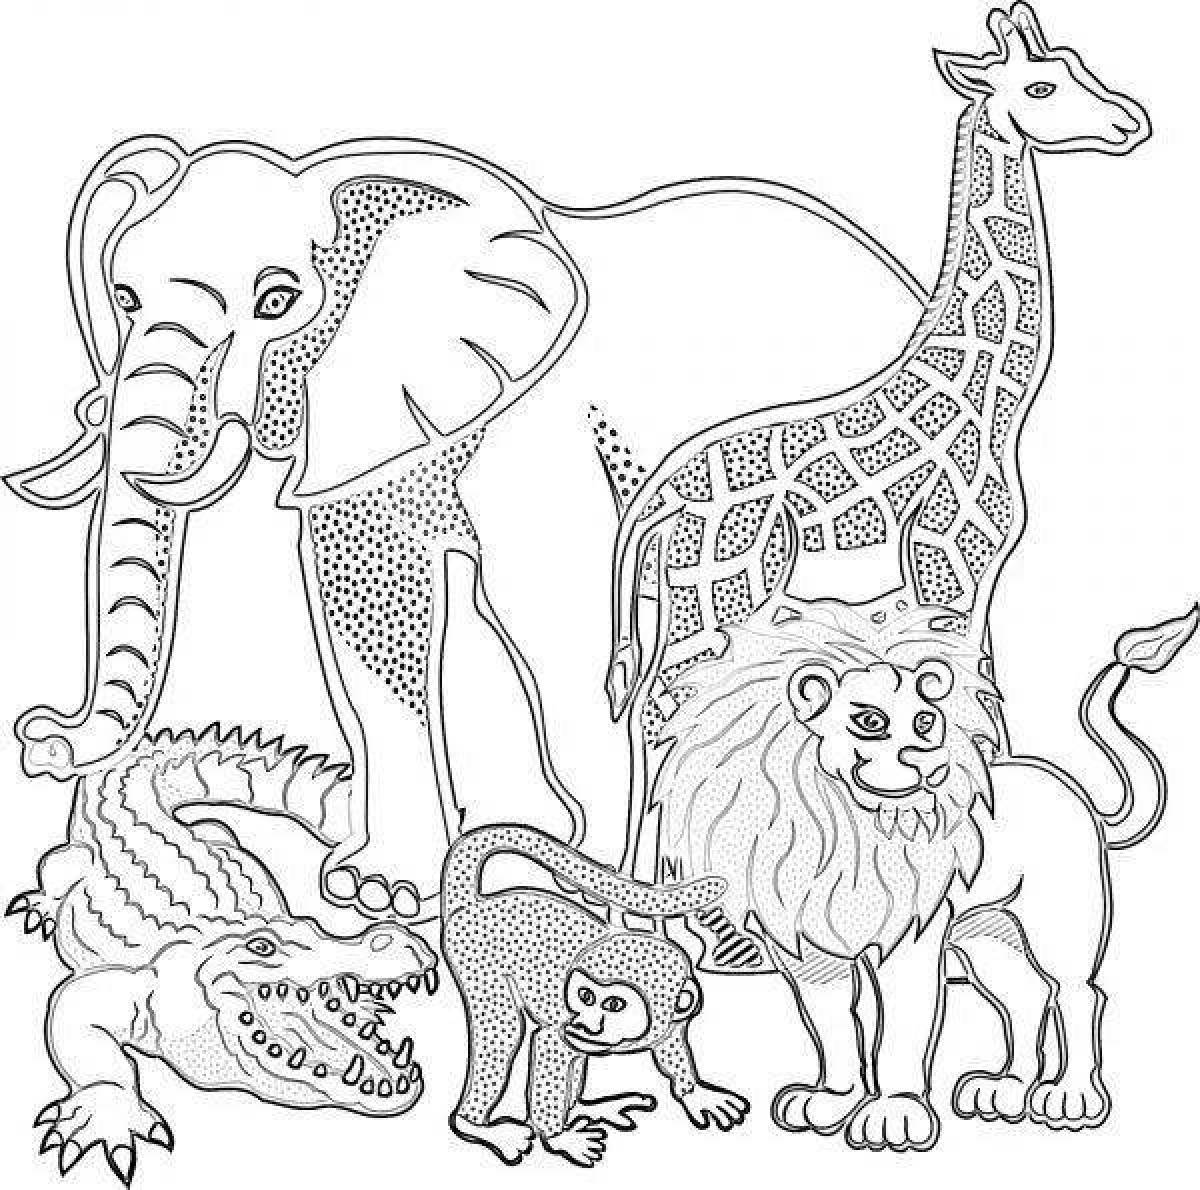 Великолепная раскраска африканских животных для детей 6-7 лет